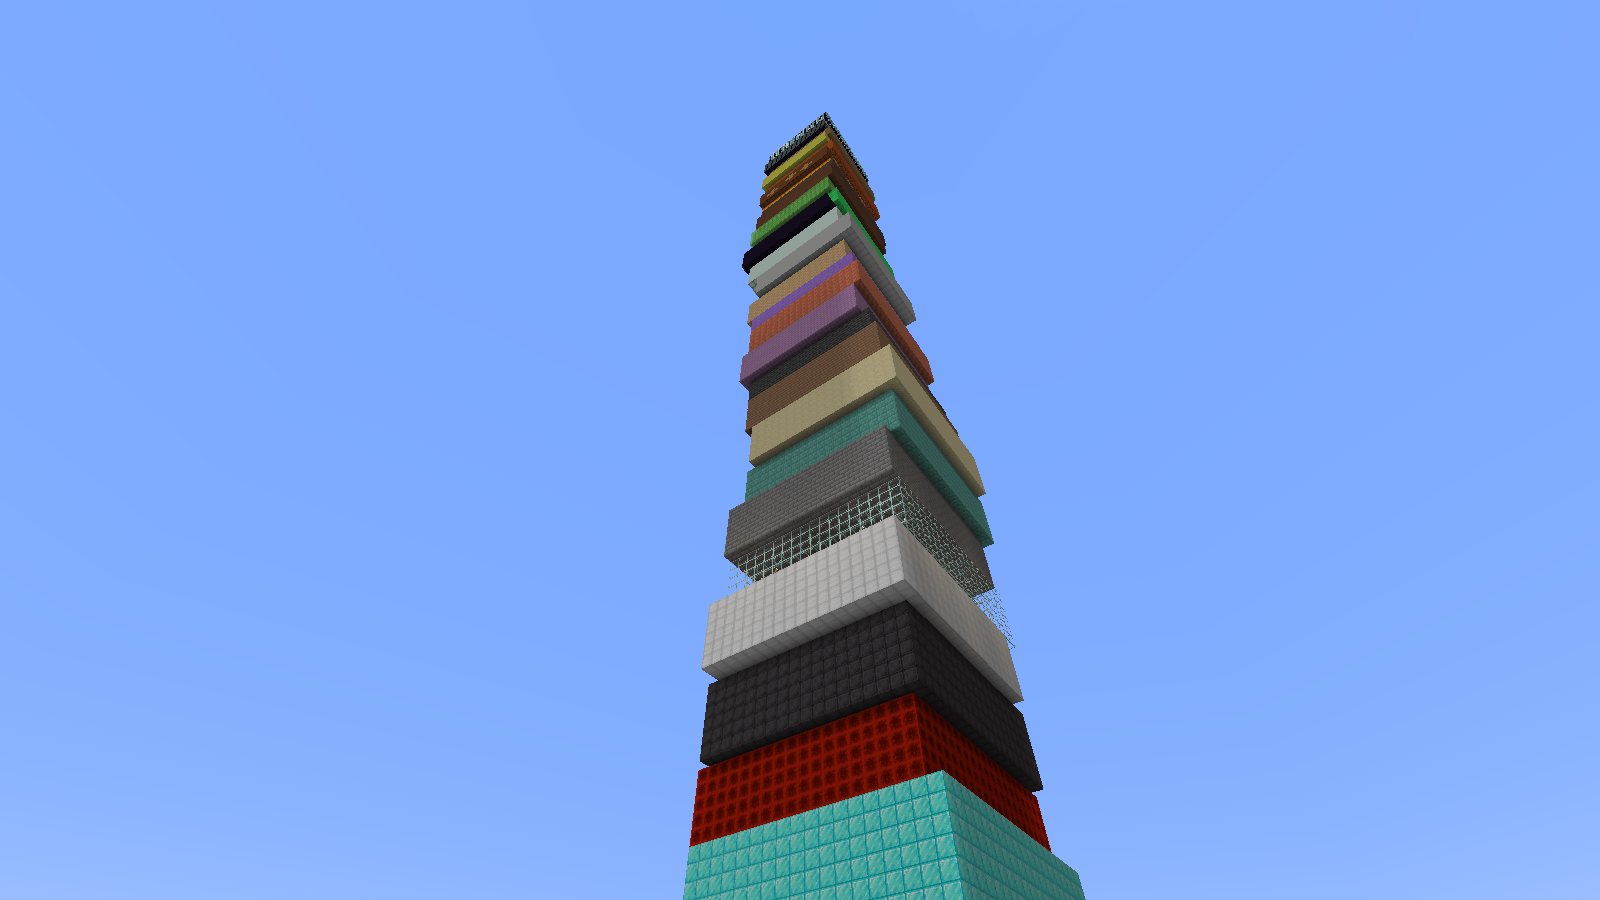 Minecract Skyscraper schematic (litematic)